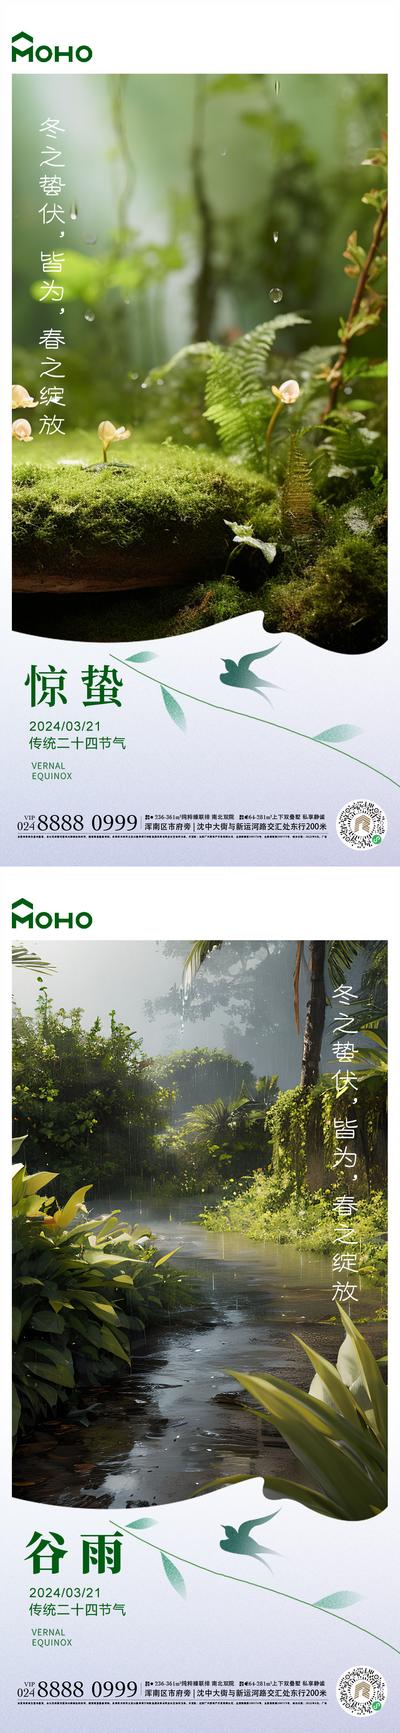 南门网 广告 海报 节气 惊蛰 谷雨 雨水 惊雷 春天 春 24节气 自然 花